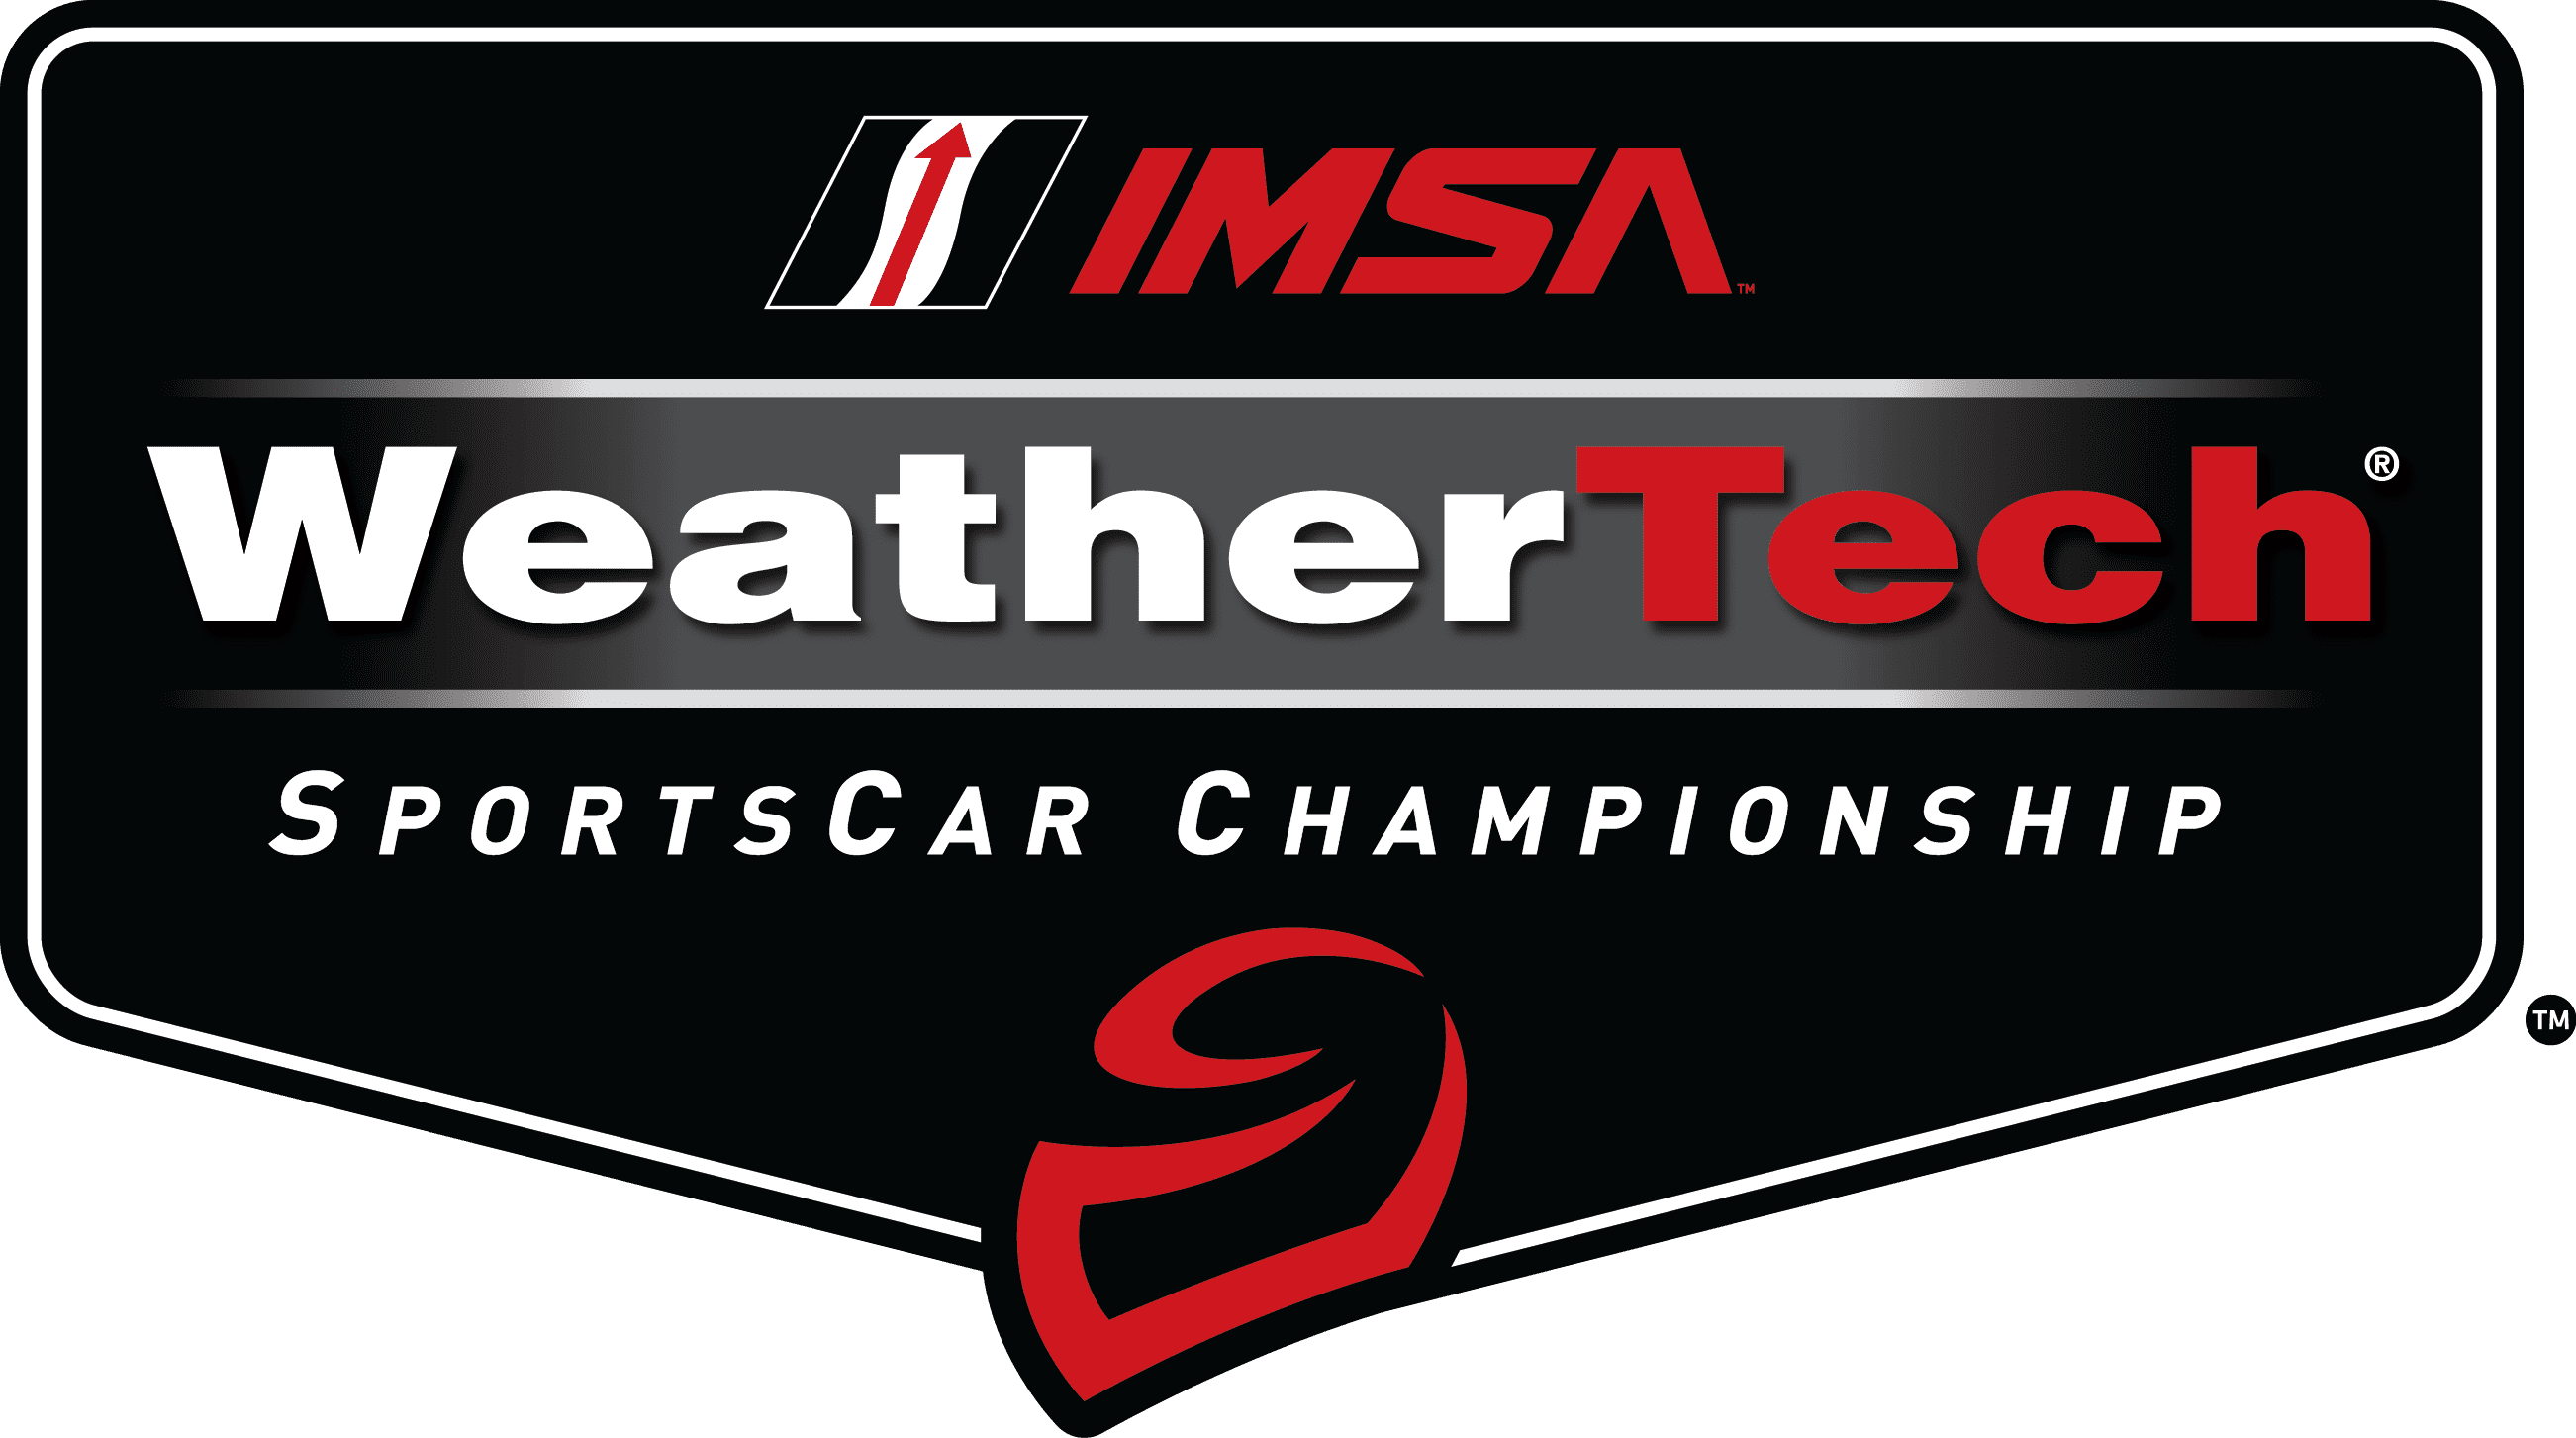 Weathertech Championship